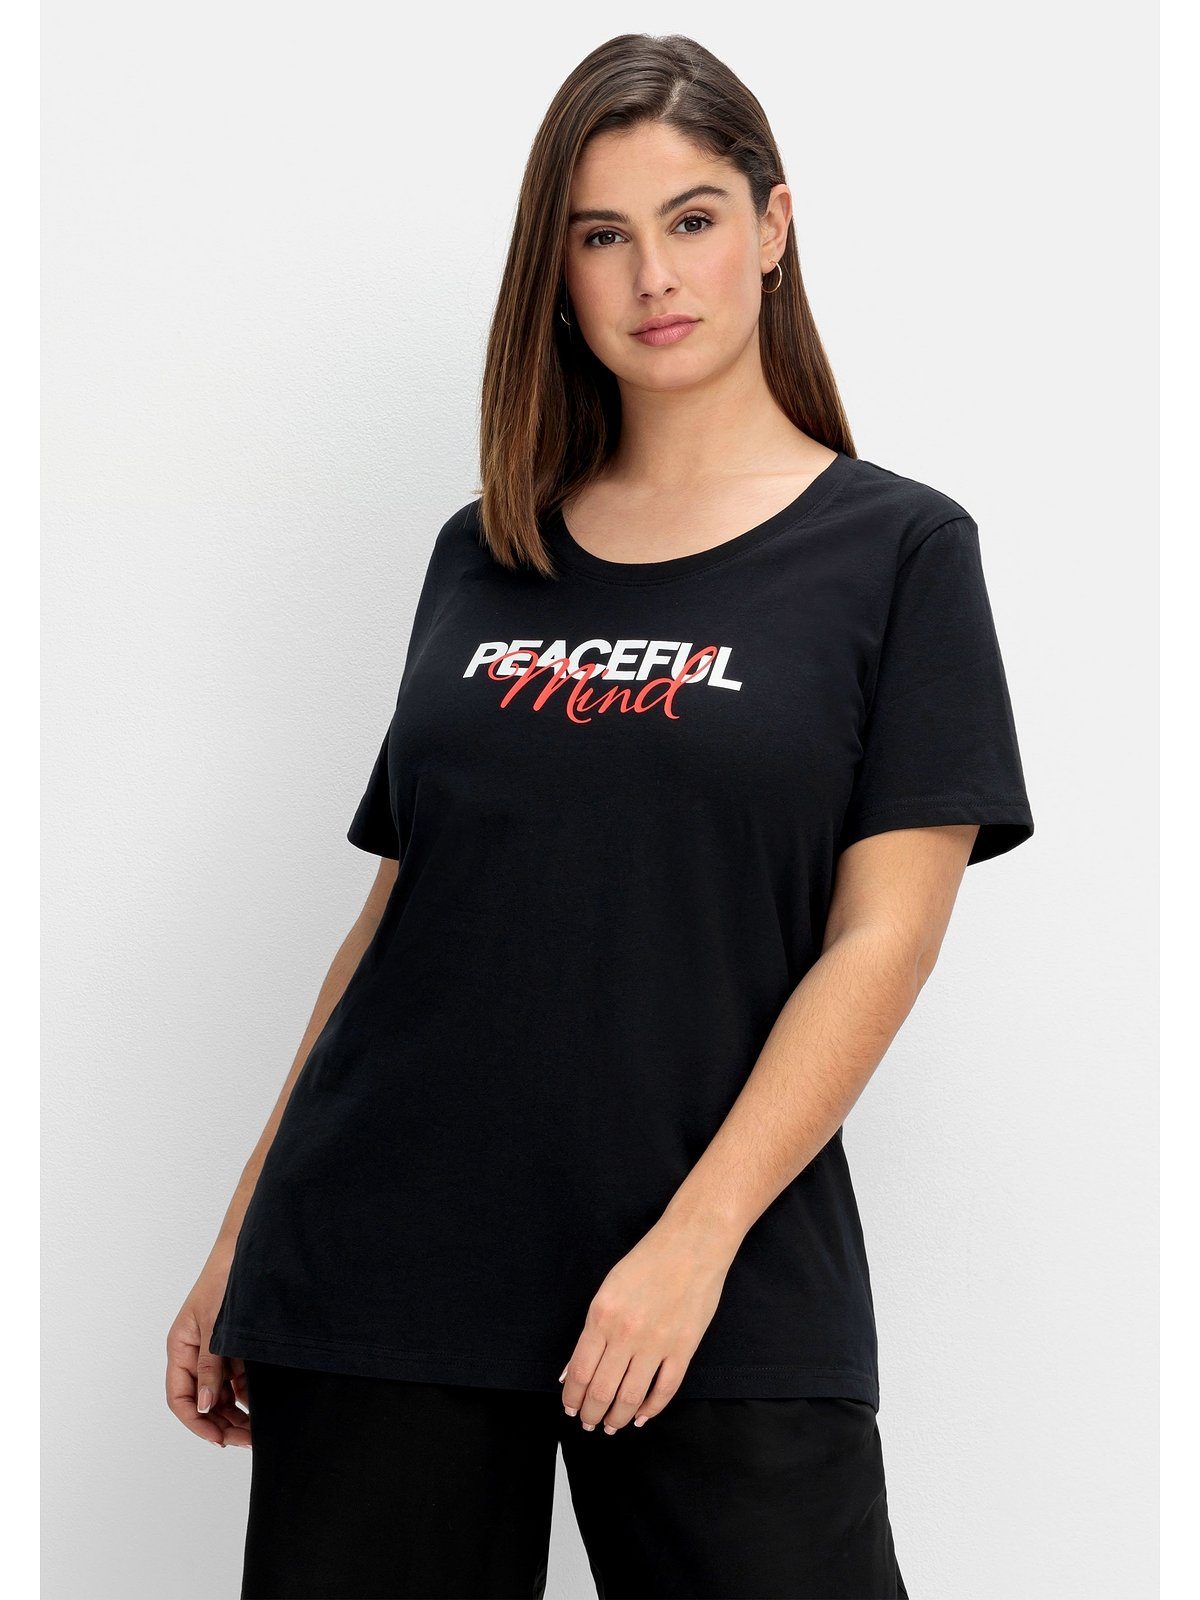 Sheego T-Shirt Große Größen mit Statement-Frontdruck schwarz bedruckt